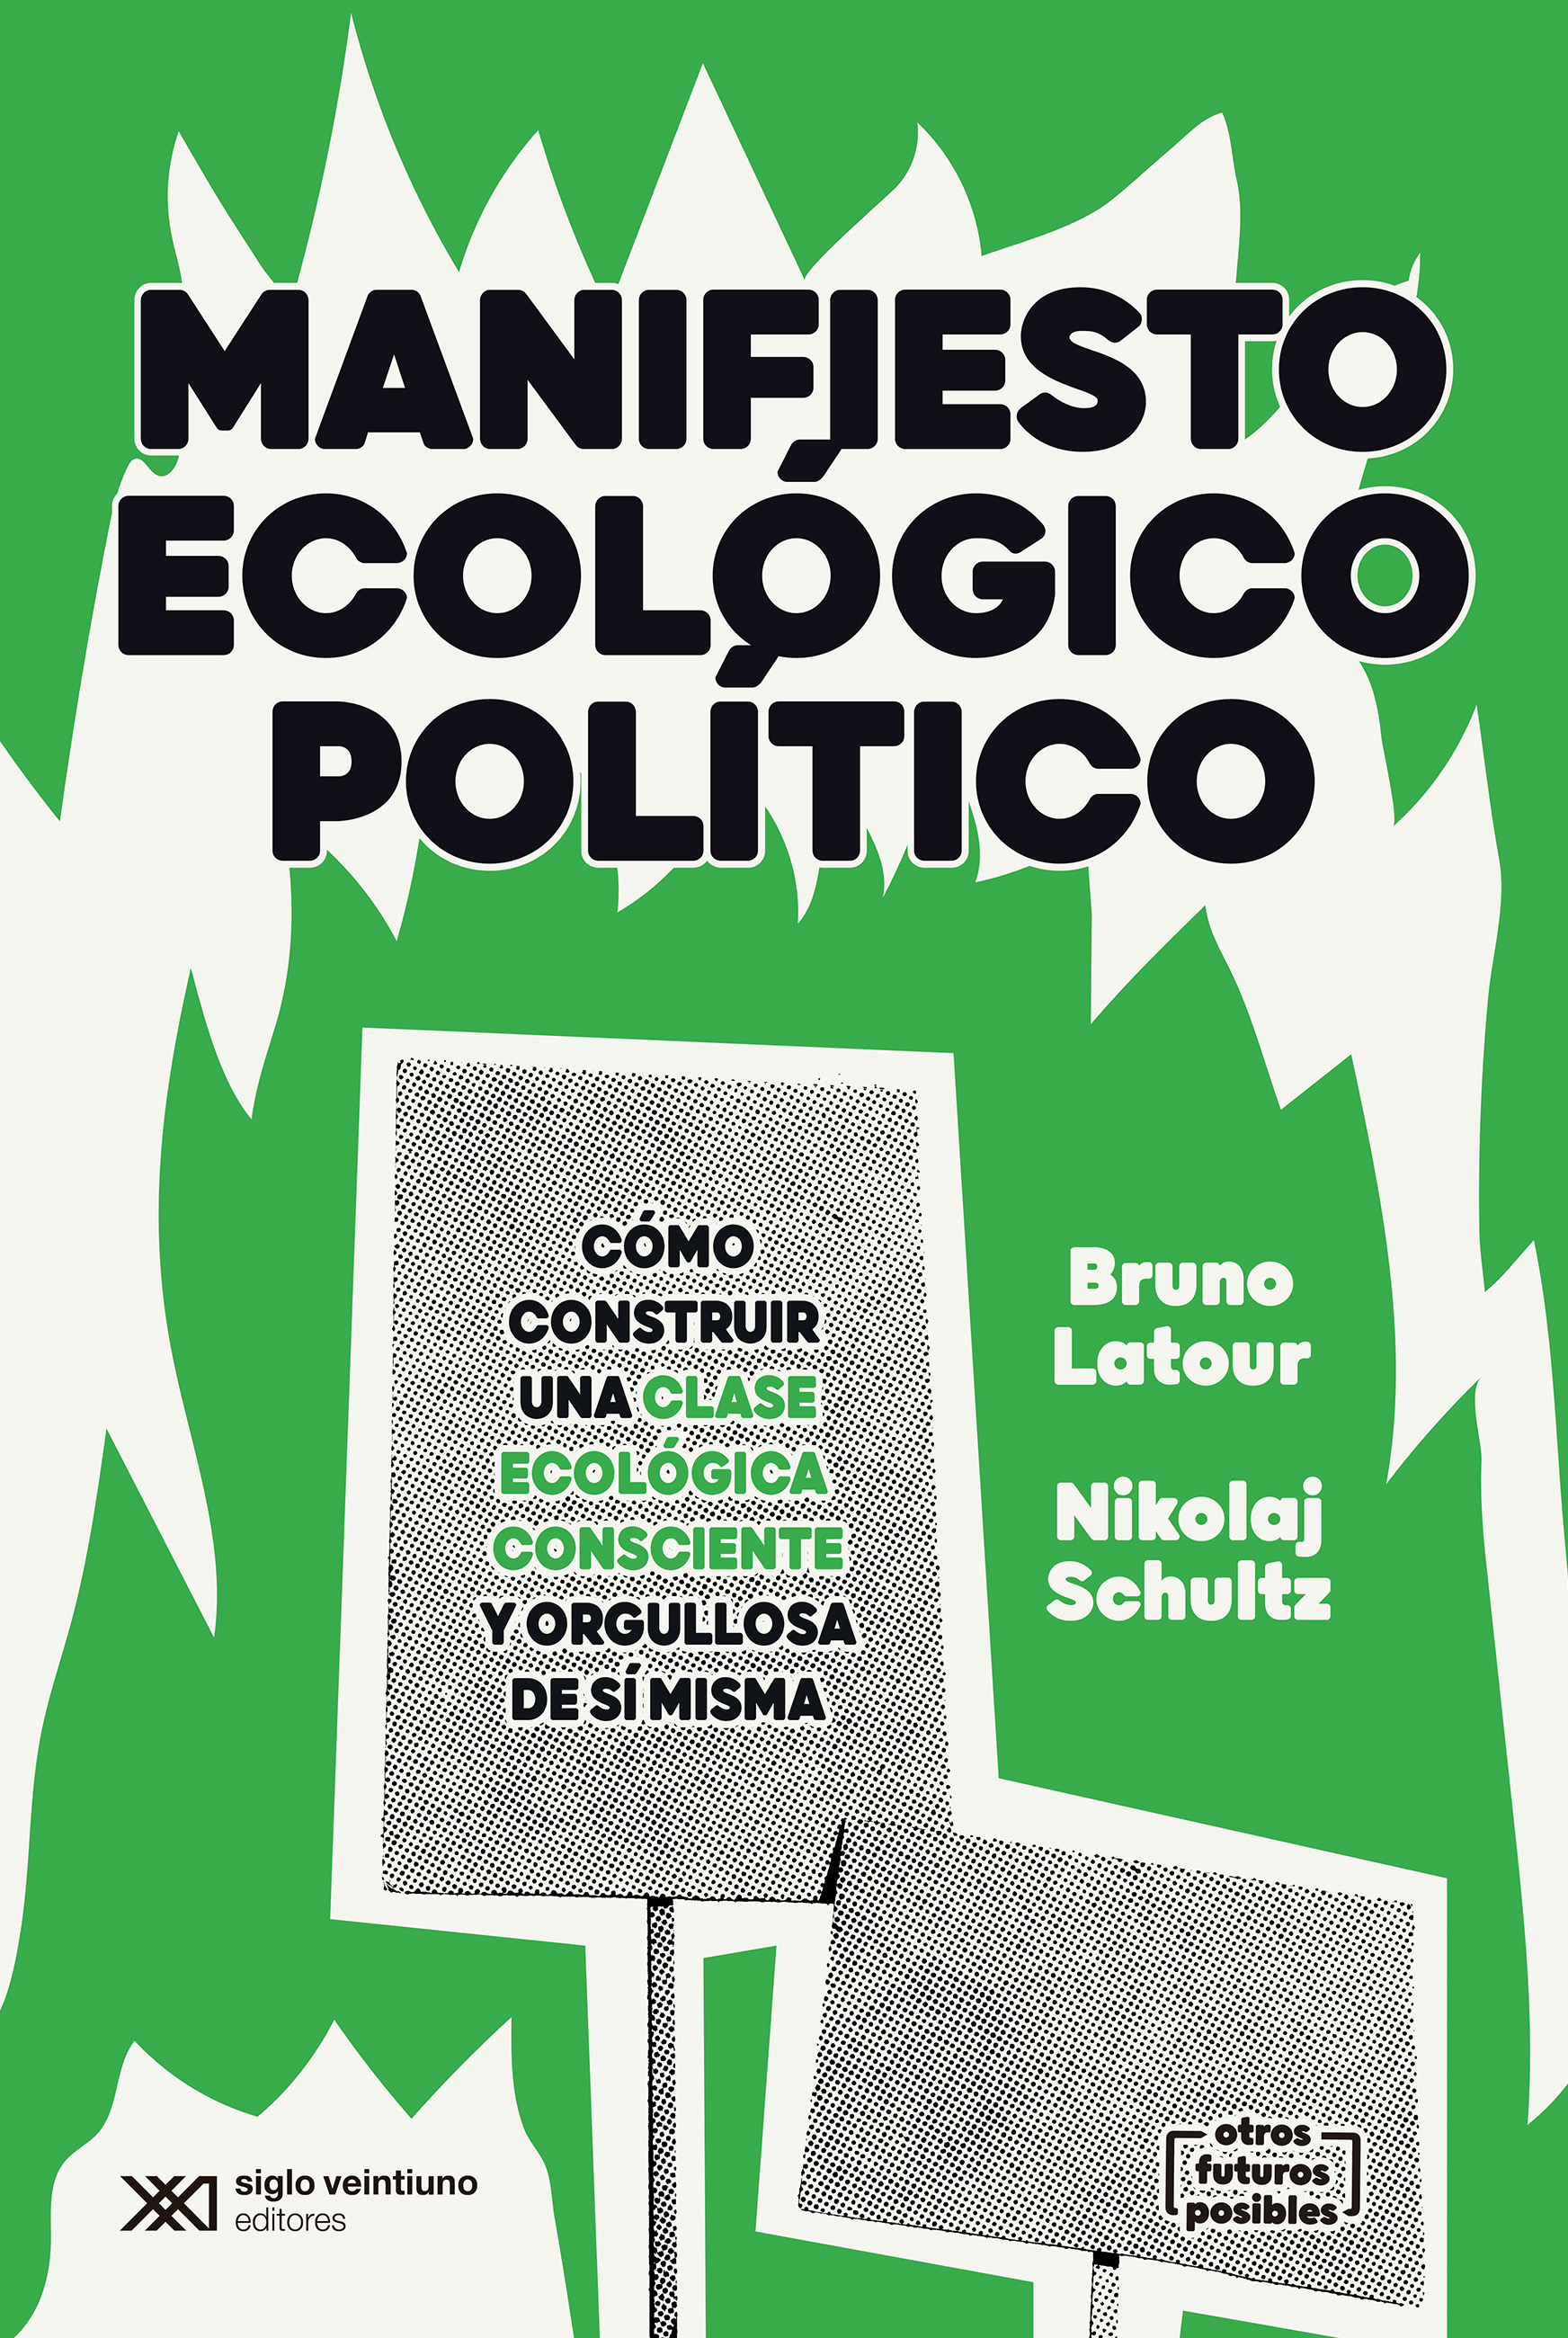 MANIFIESTO ECOLÓGICO POLÍTICO - Bruno Latour | Nikolaj Schultz